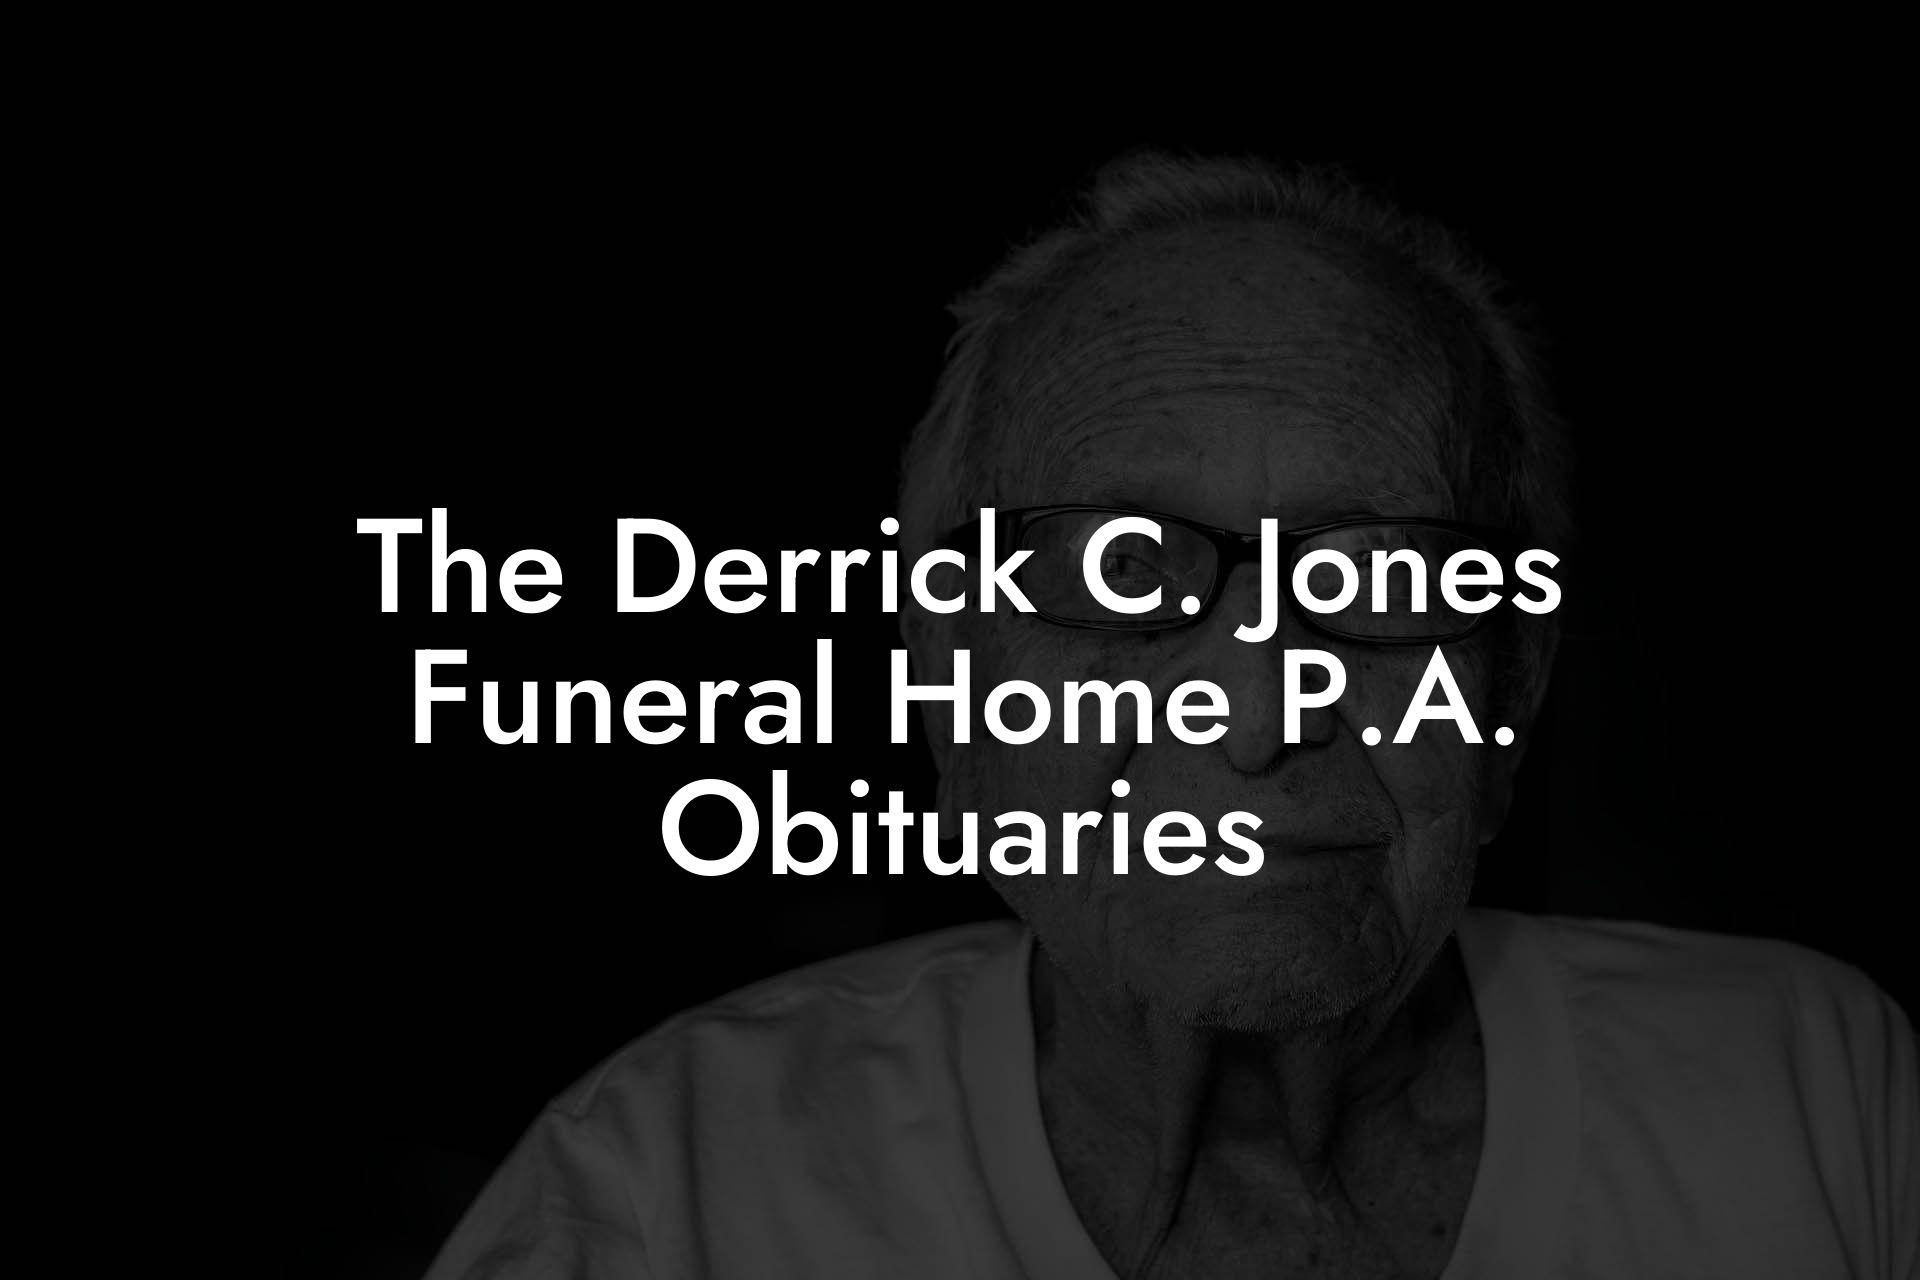 The Derrick C. Jones Funeral Home P.A. Obituaries